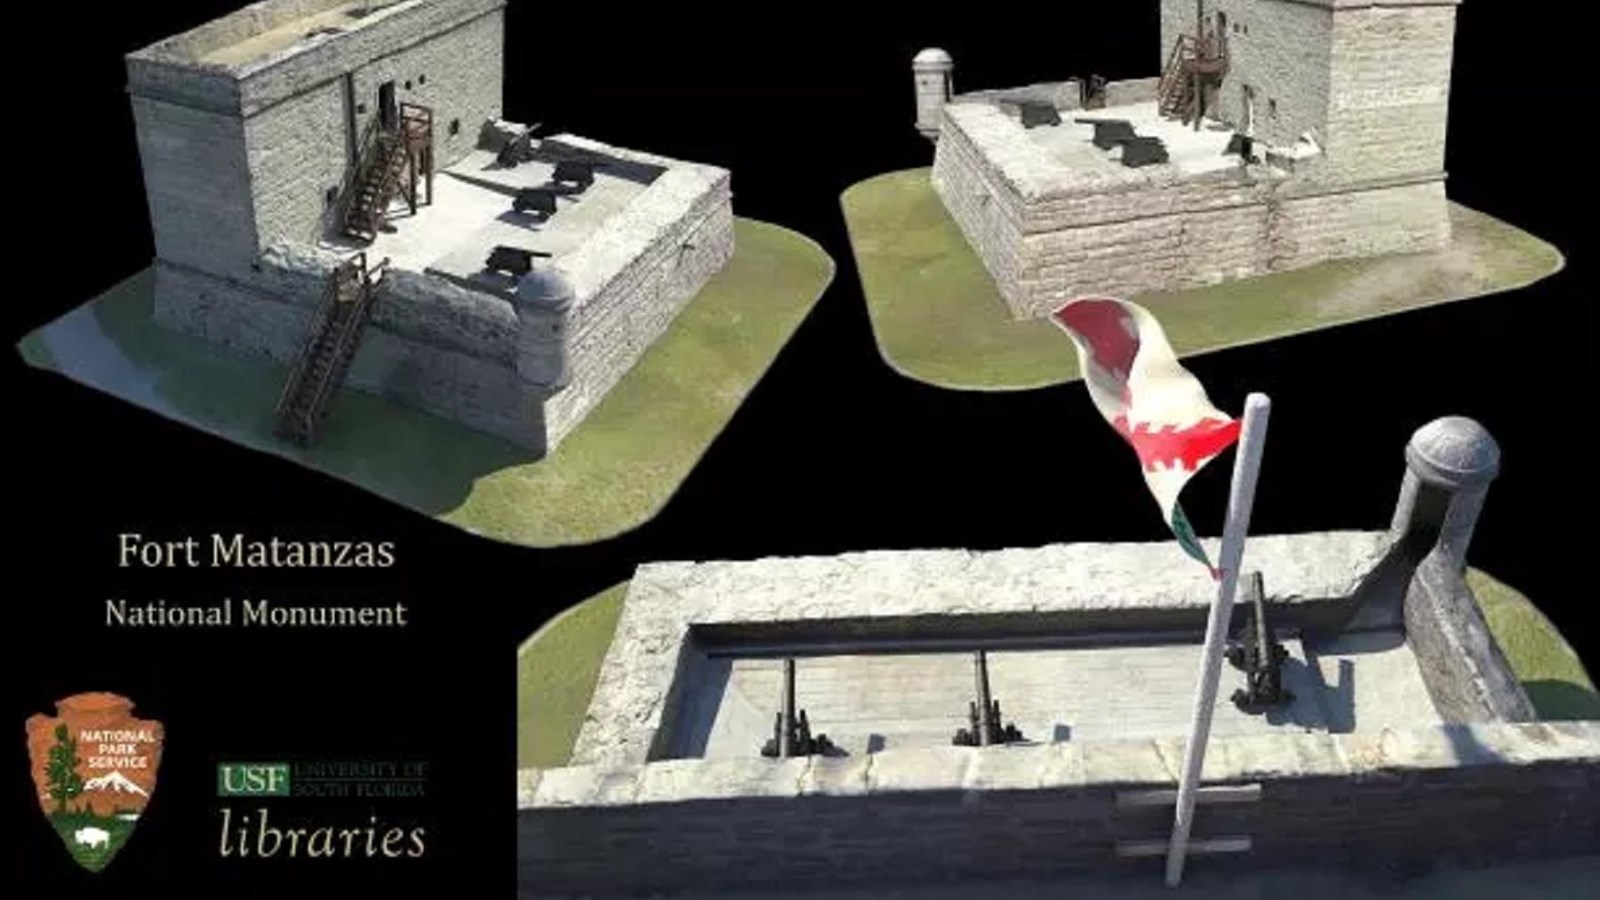 3D Models of Fort Matanzas